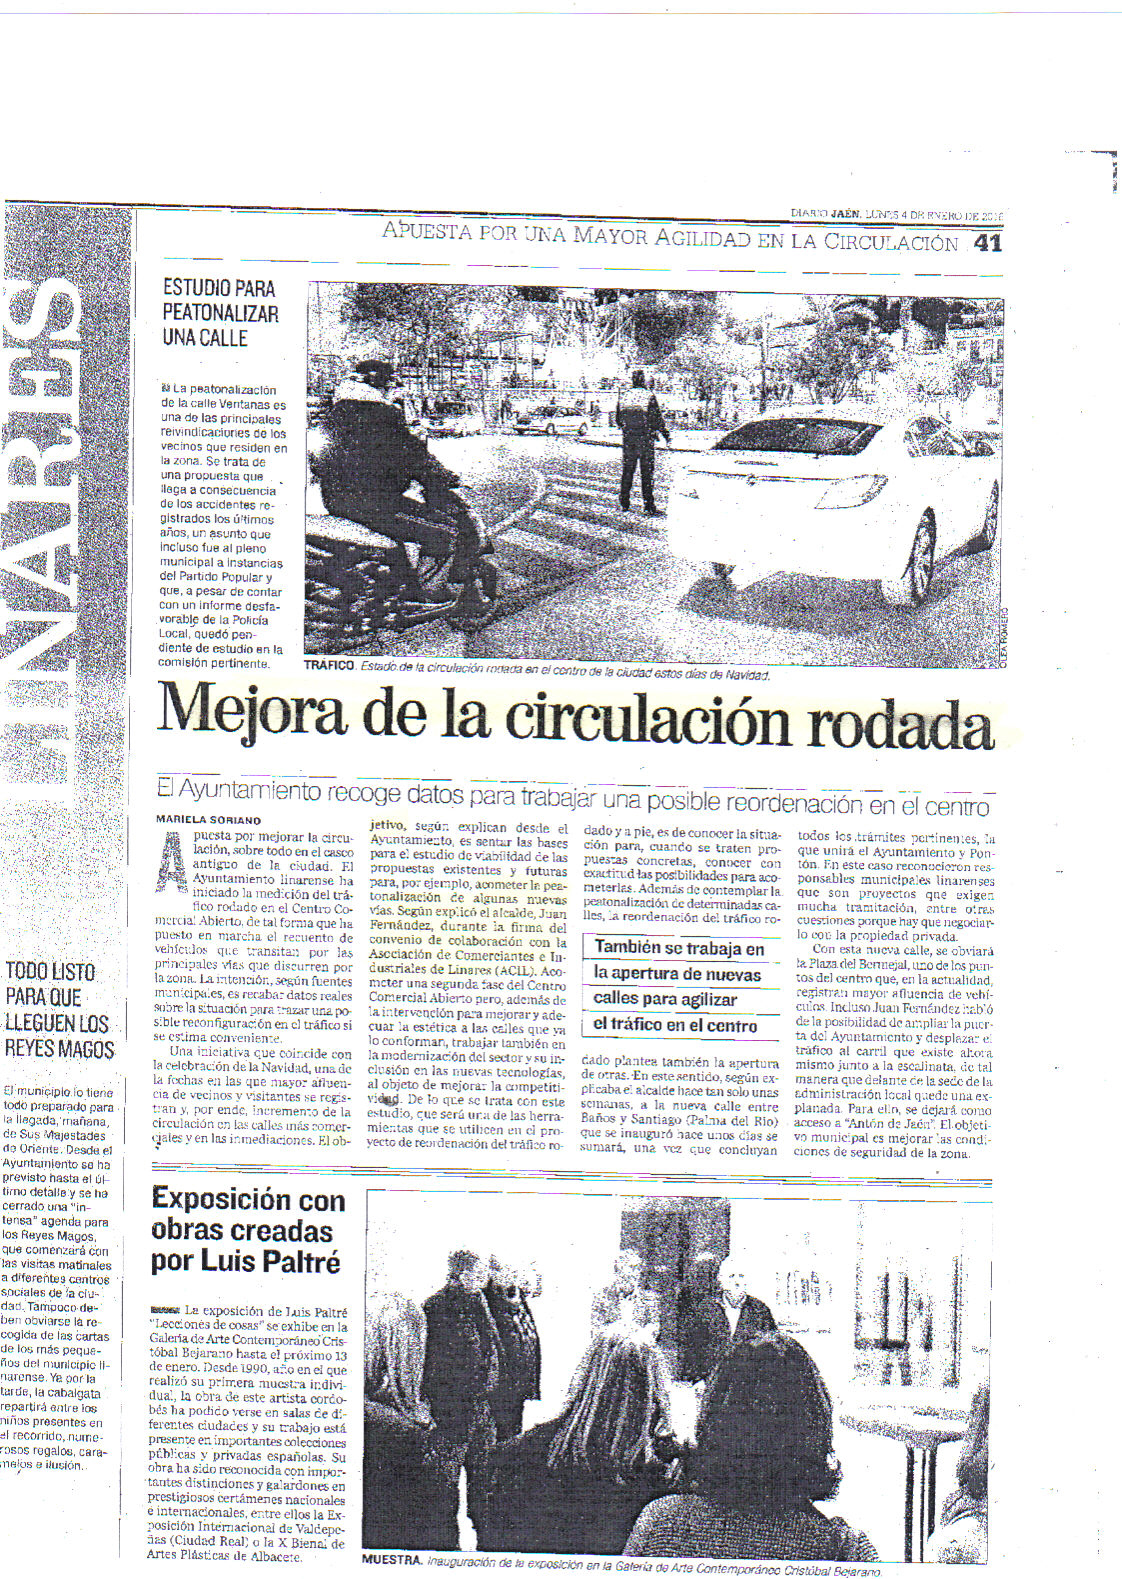 Mejora de la Circulación Rodada. Prensa Jaén 4 enero